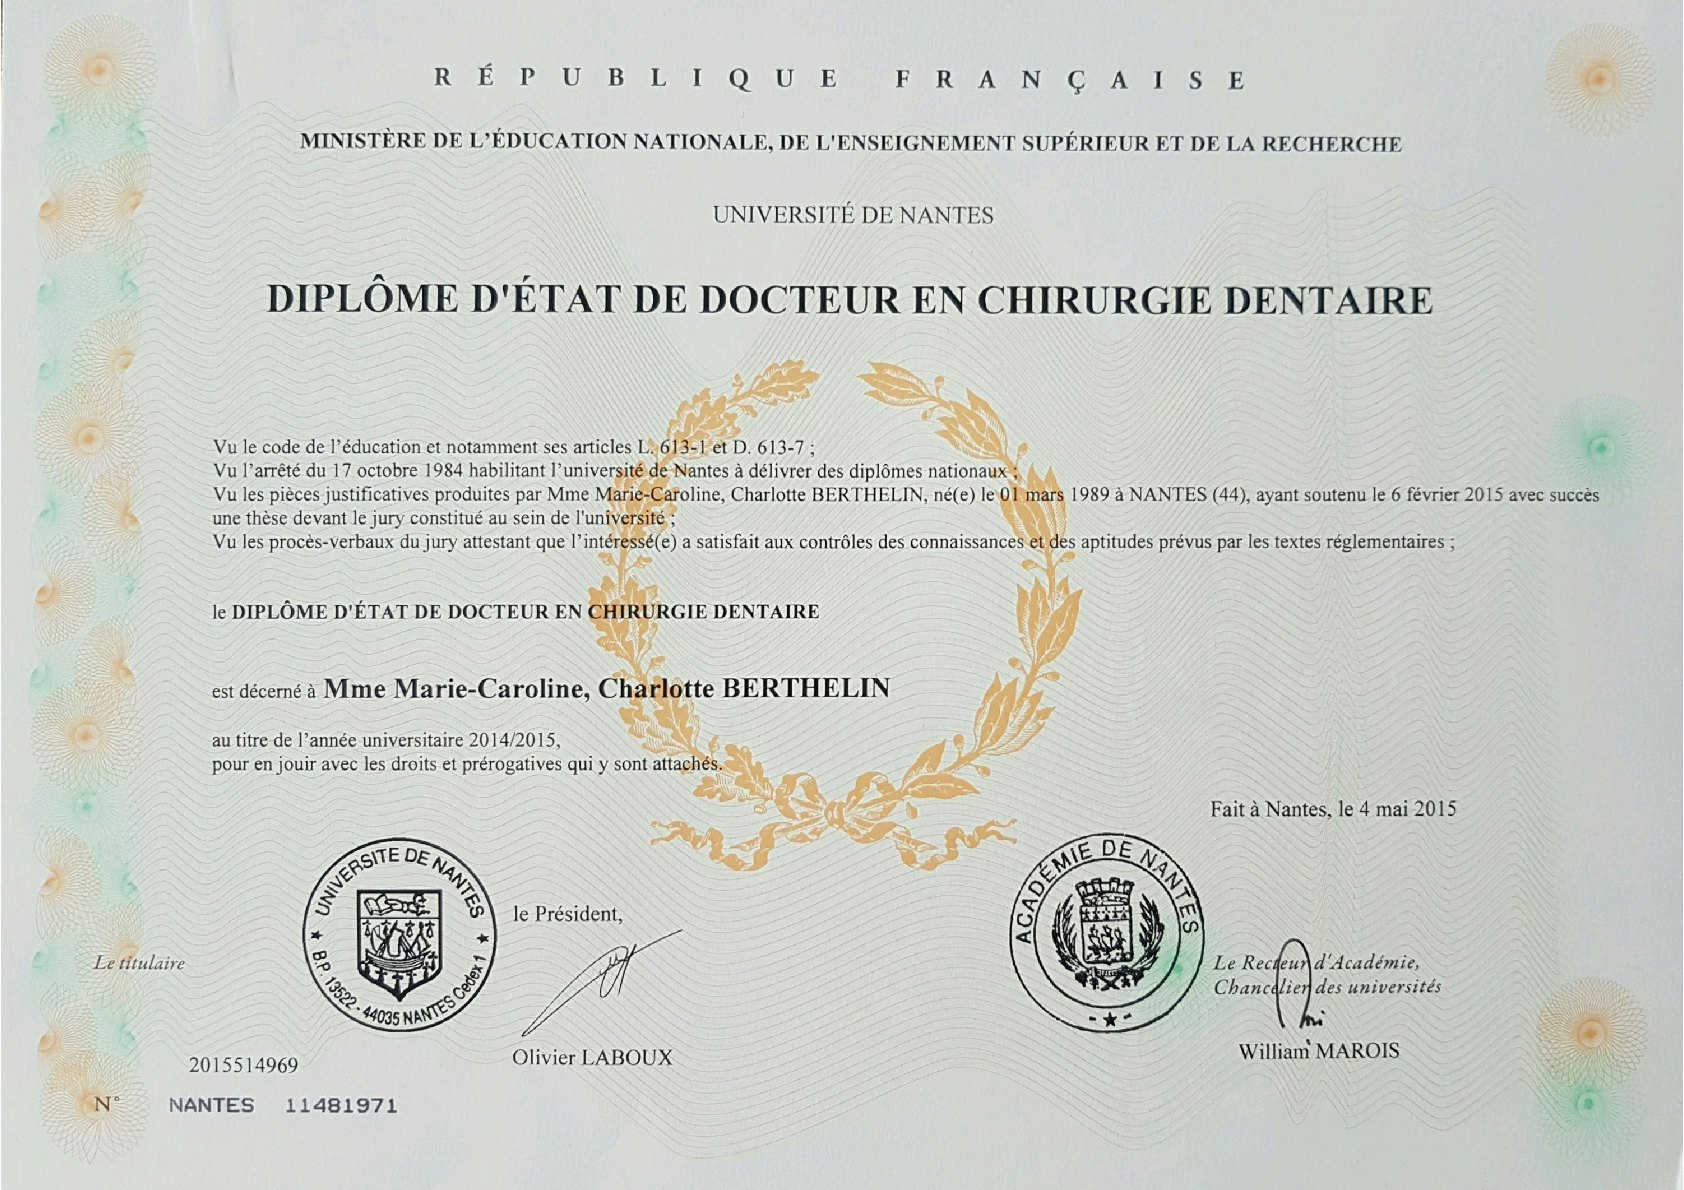 Diploma of Dentistry